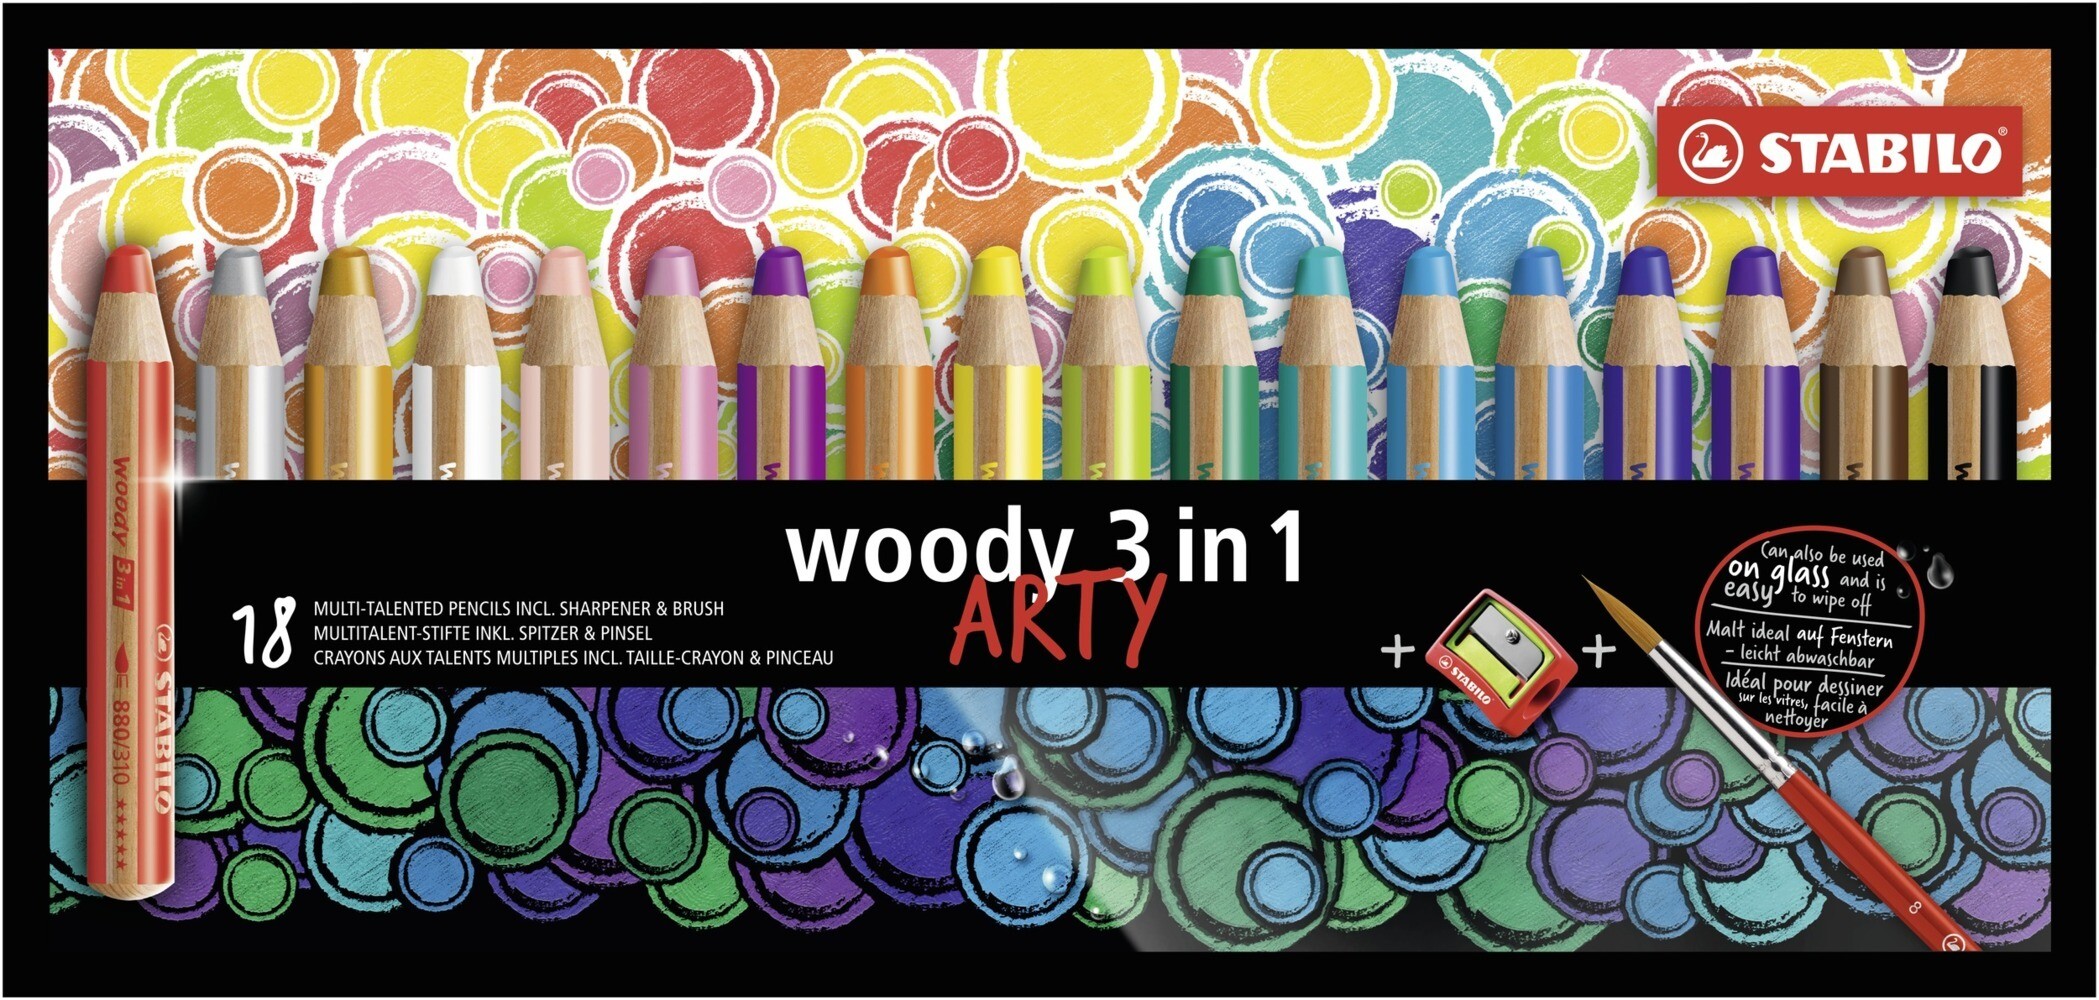 STABILO Buntstifte woody 3in1 ARTY 18er Set mit Pinsel und Spitzer